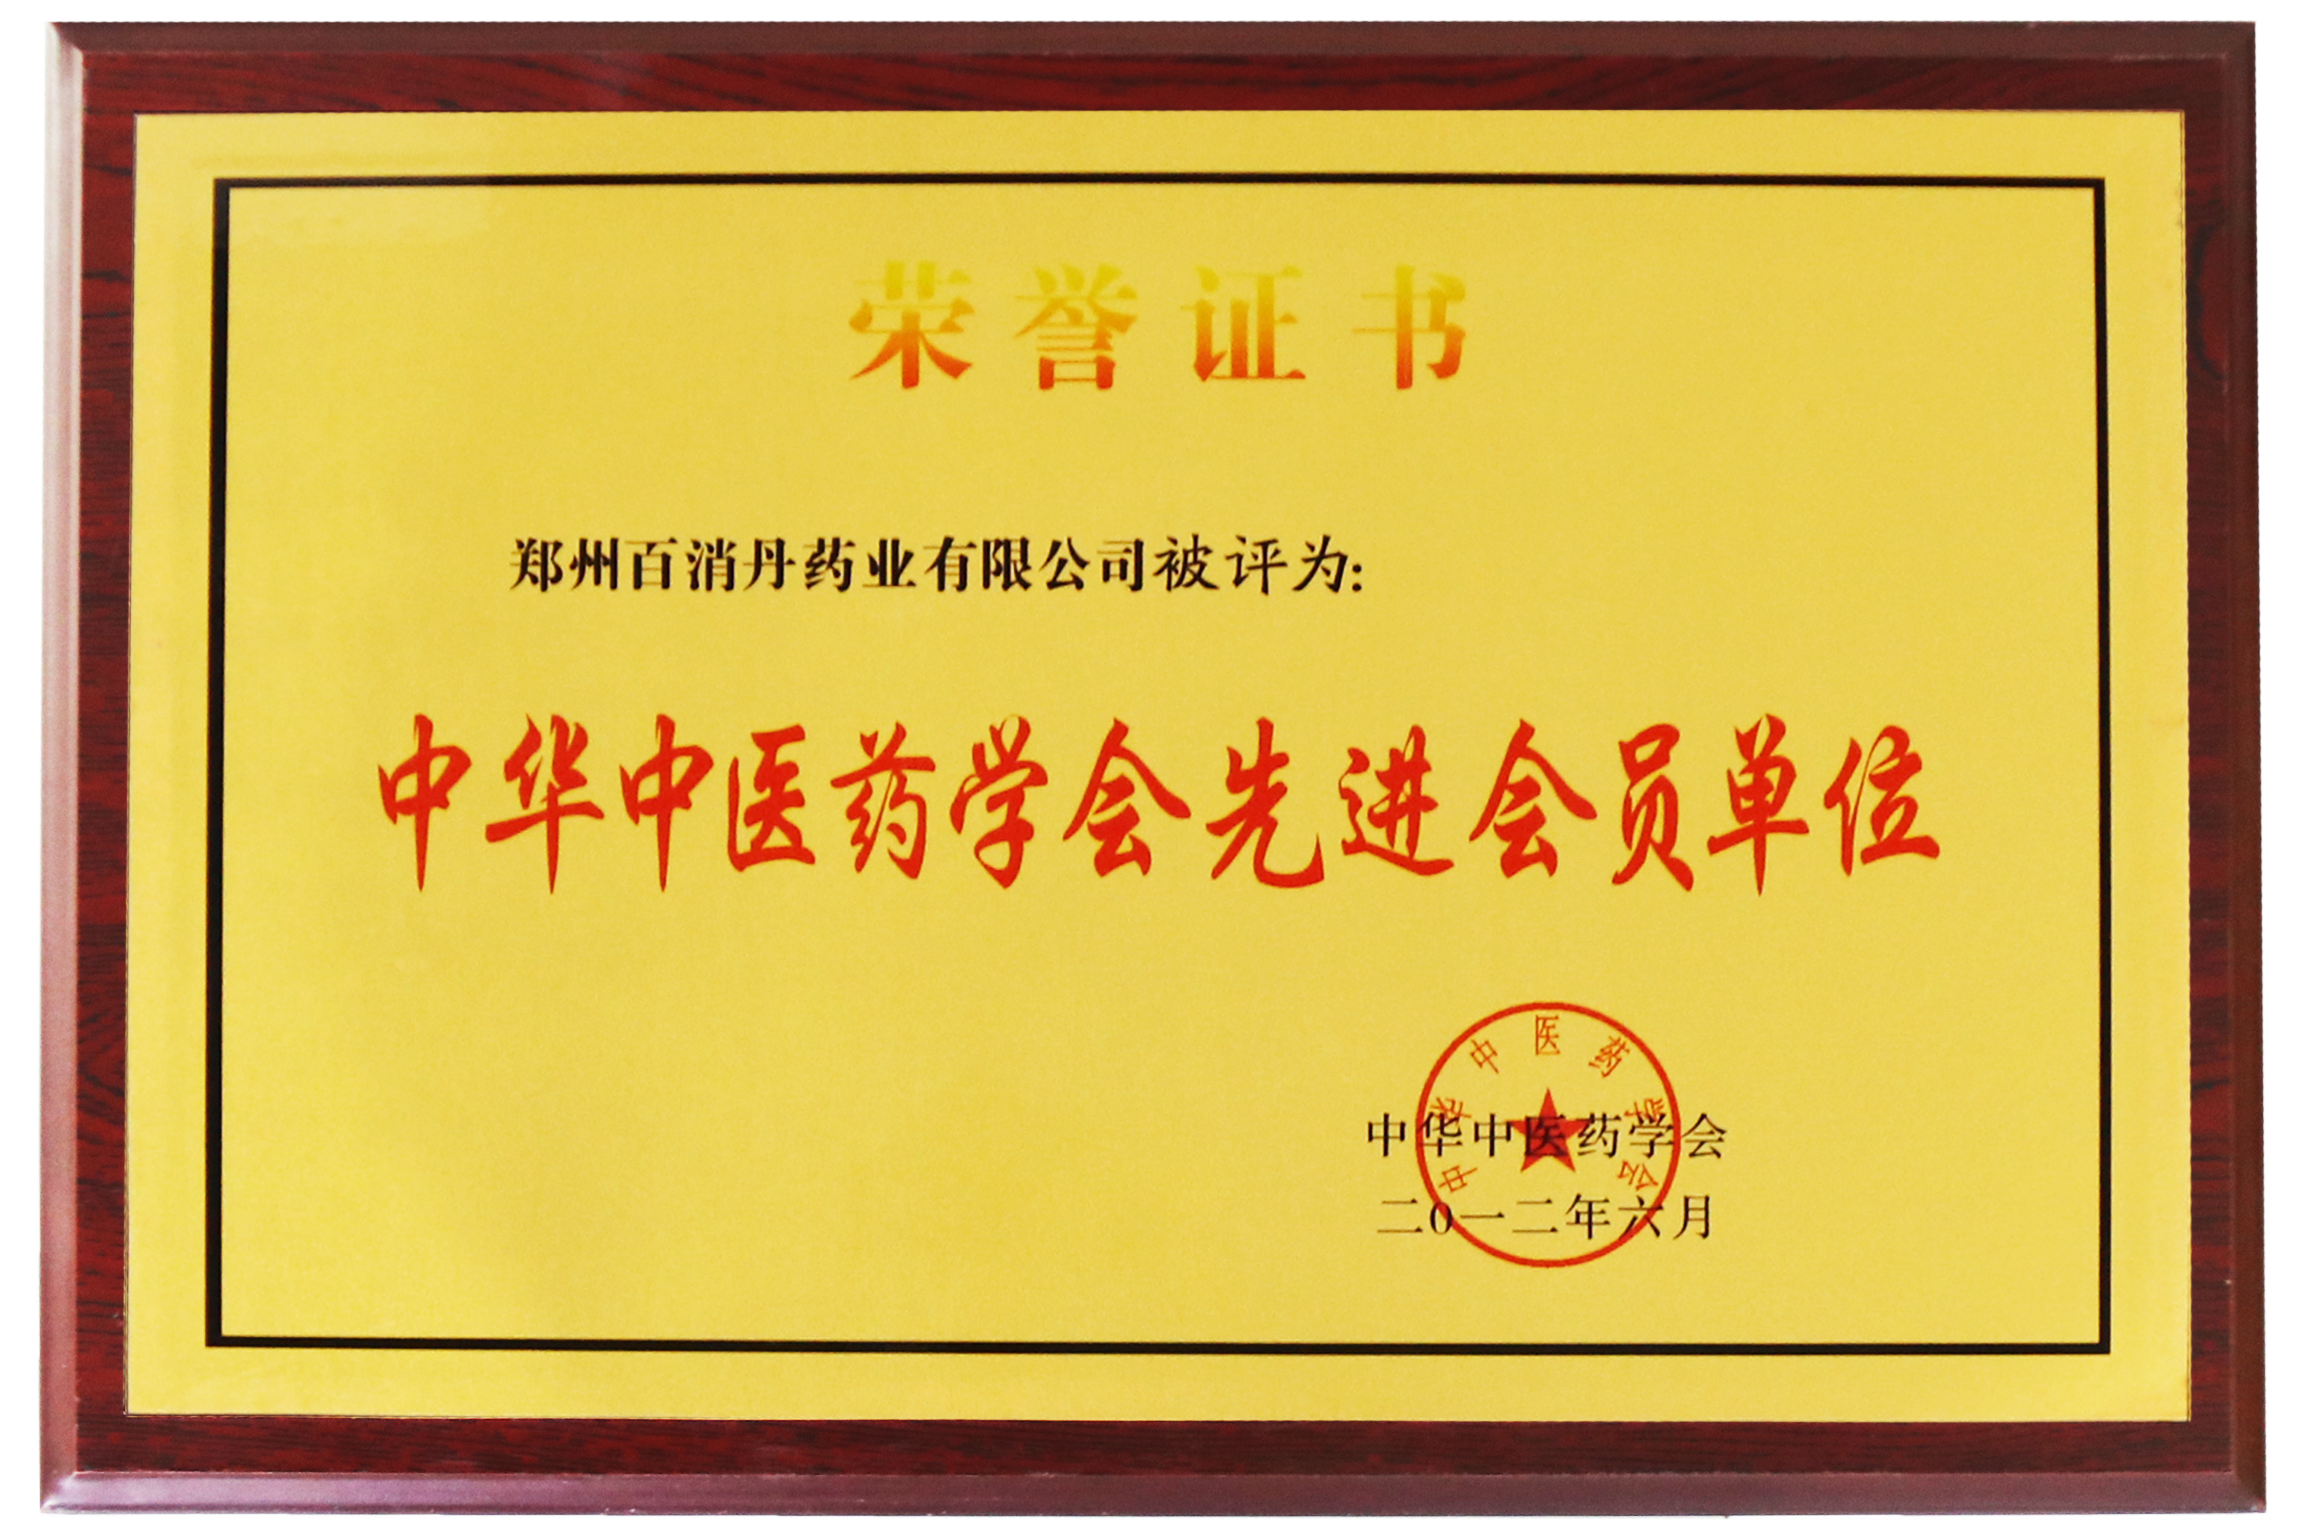 中國中醫藥協會先進會員單位